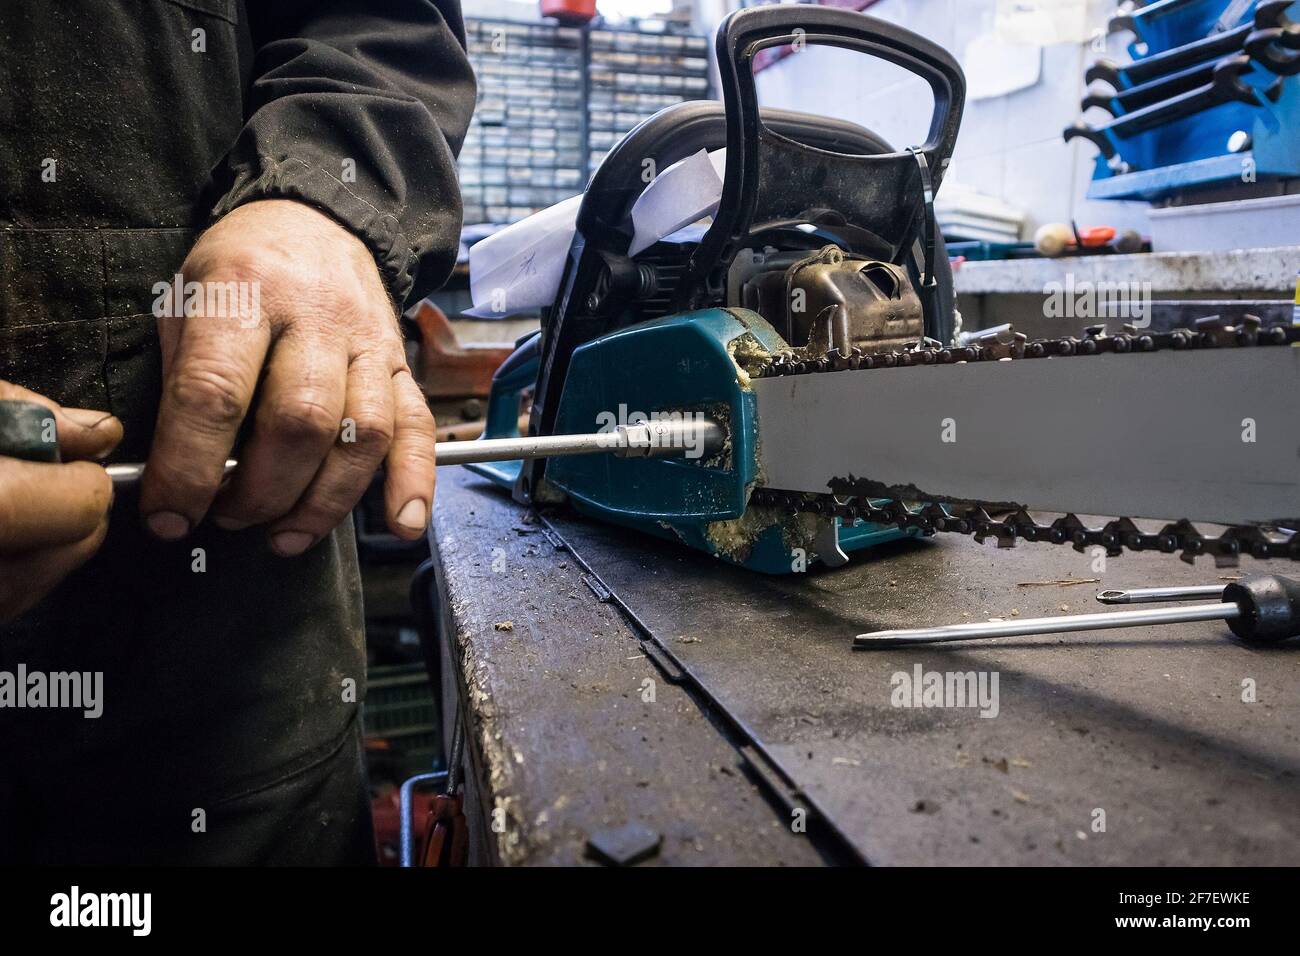 L'uomo sta svitando la lama di una motosega su un banco di lavoro in un  negozio di meccanica. Manutenzione di una motosega, rimuovendo la lama con  una chiave per utensili misura 13